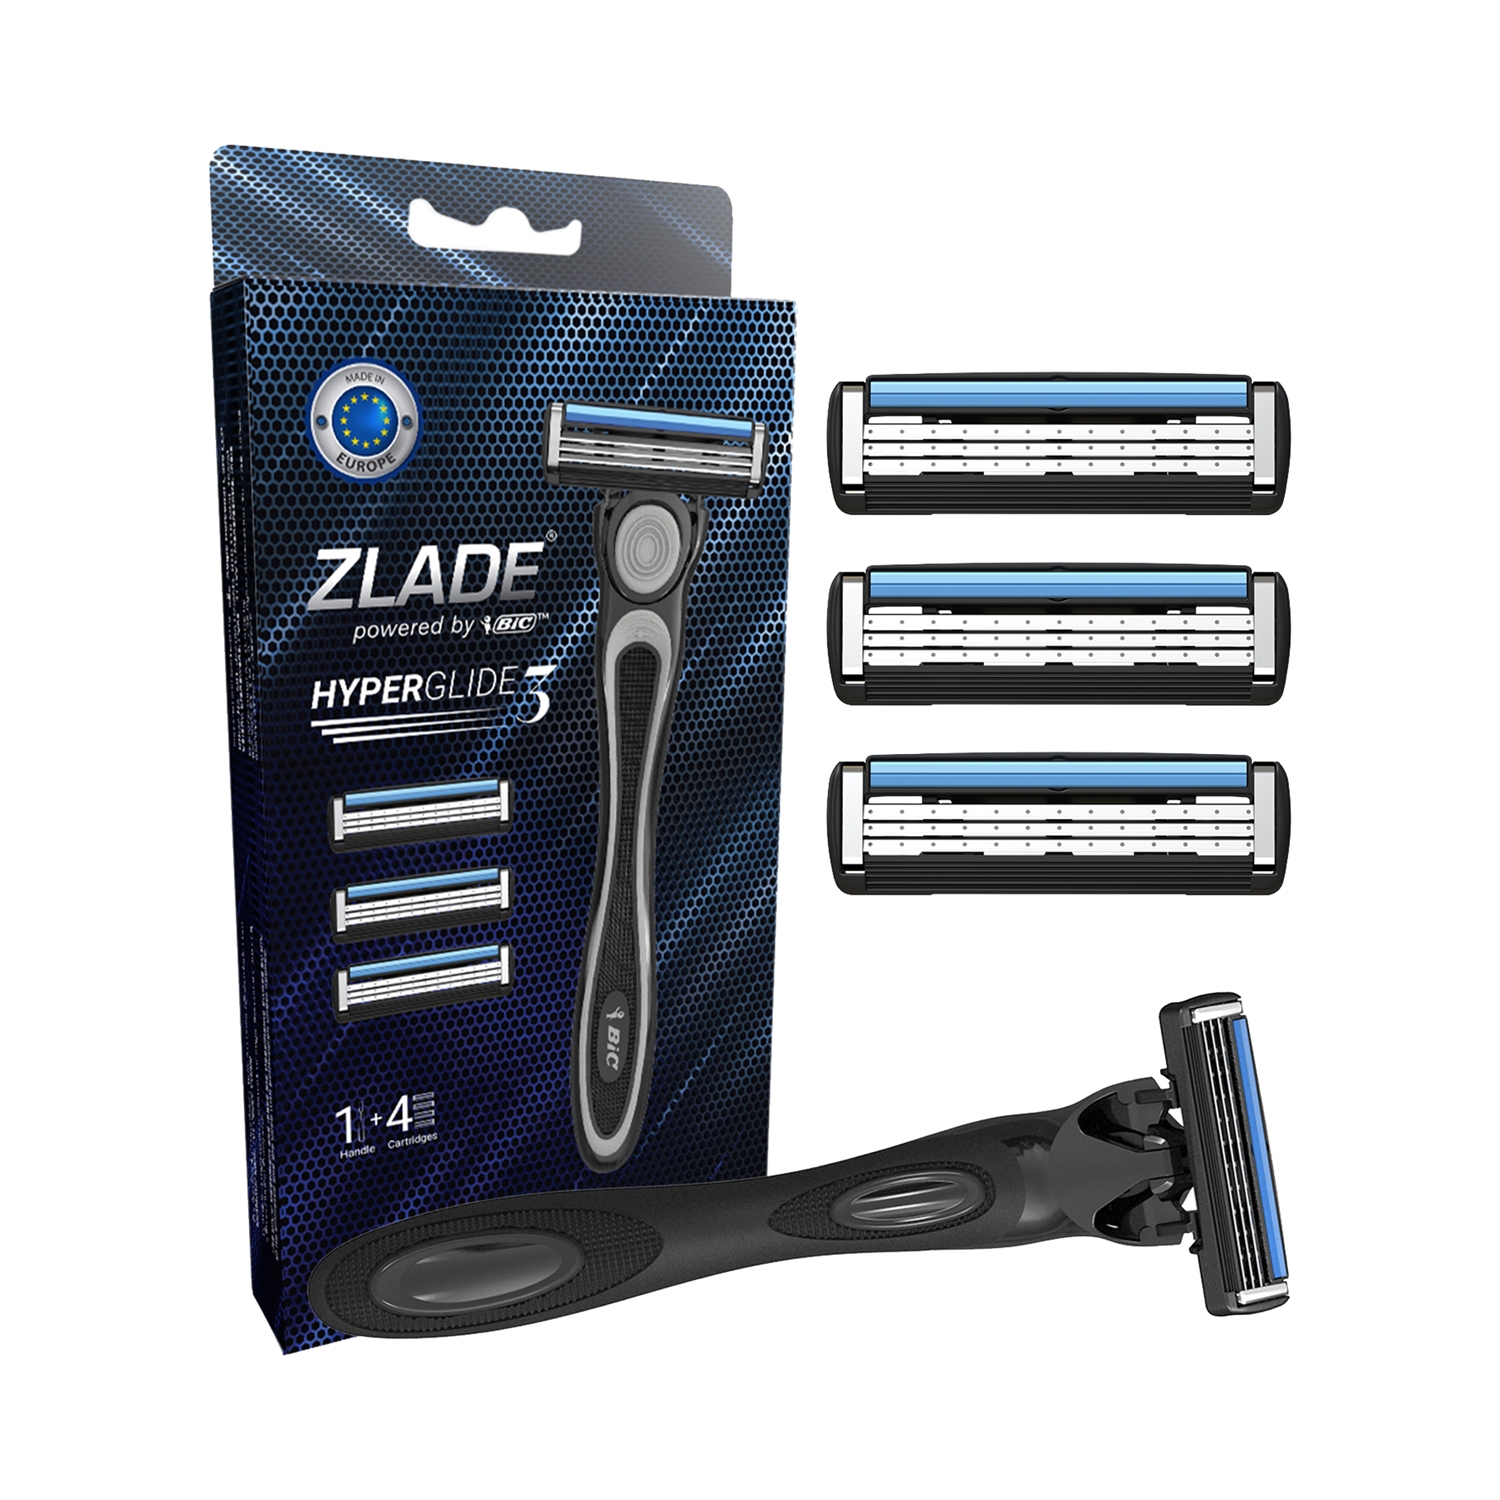 Zlade | Zlade Hyperglide3 Advanced Shaving System For Men - (5Pcs) (1 Razor Handle + 4 Cartridges)